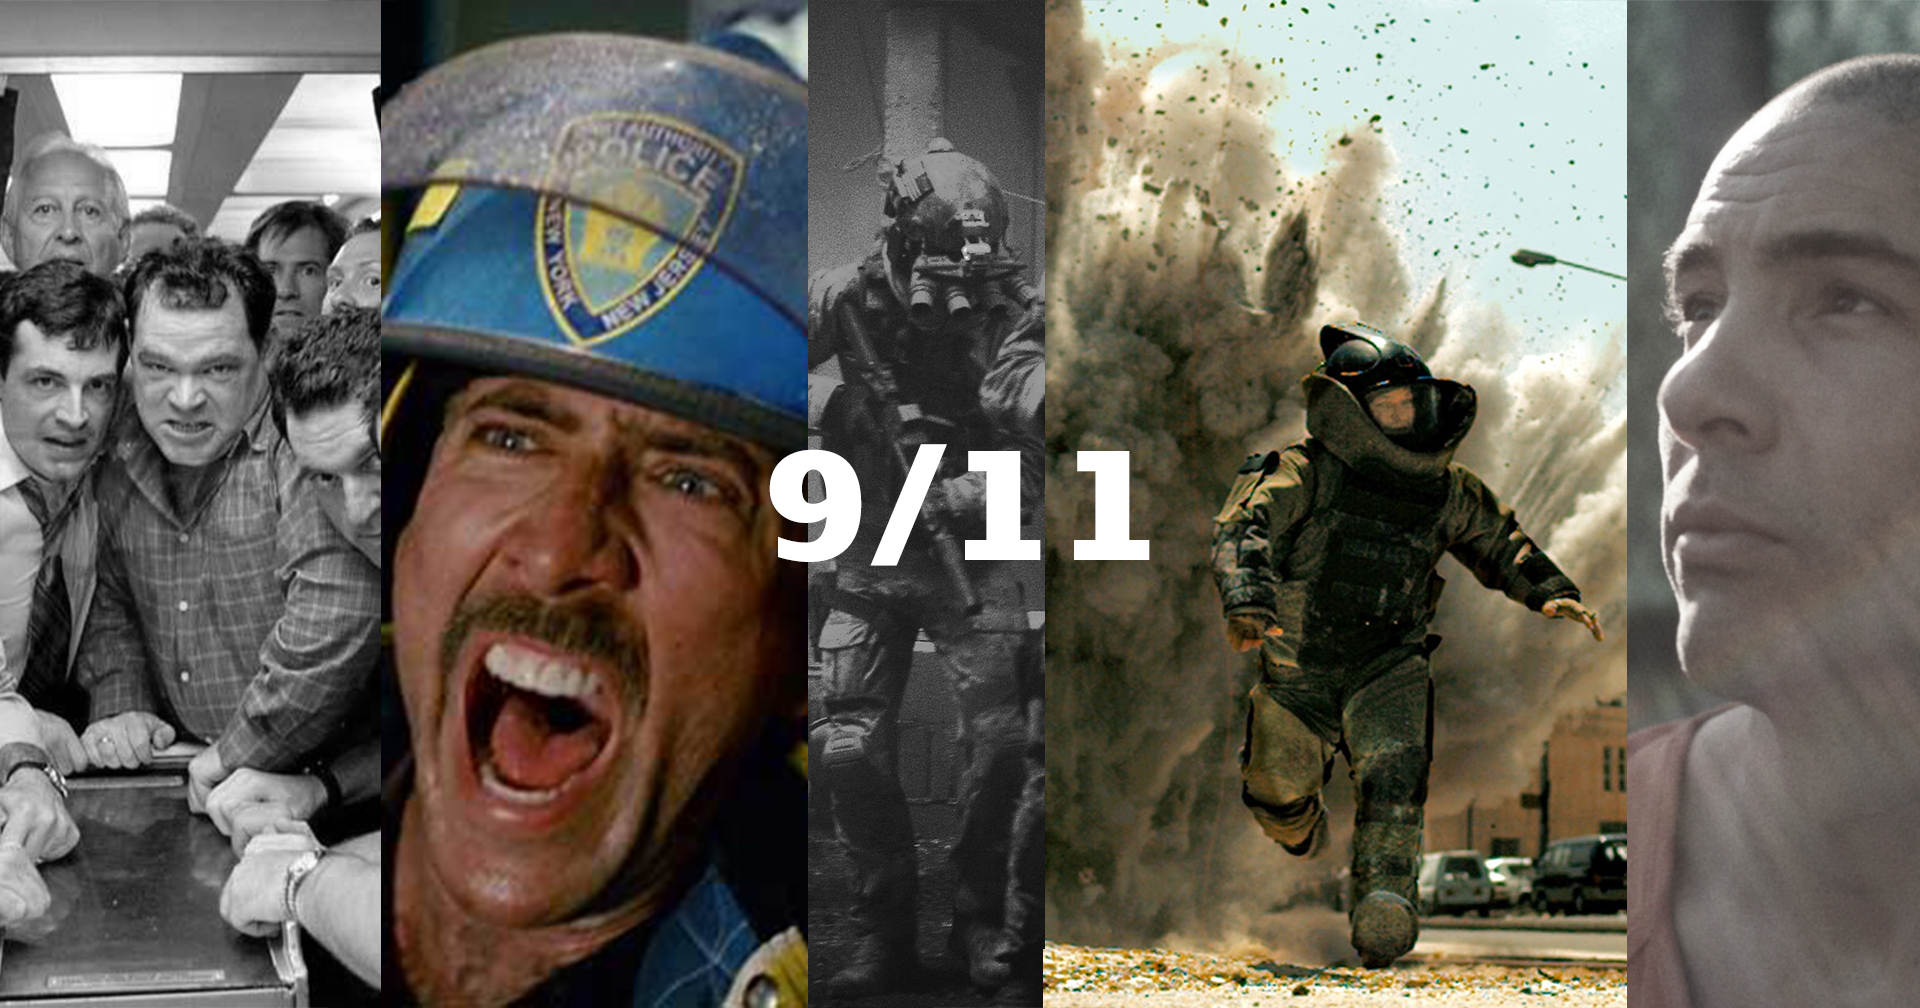 ลำดับเหตุการณ์ผ่านหนัง ก่อนจะกลายมาเป็น 9/11 และหลังจากนั้น